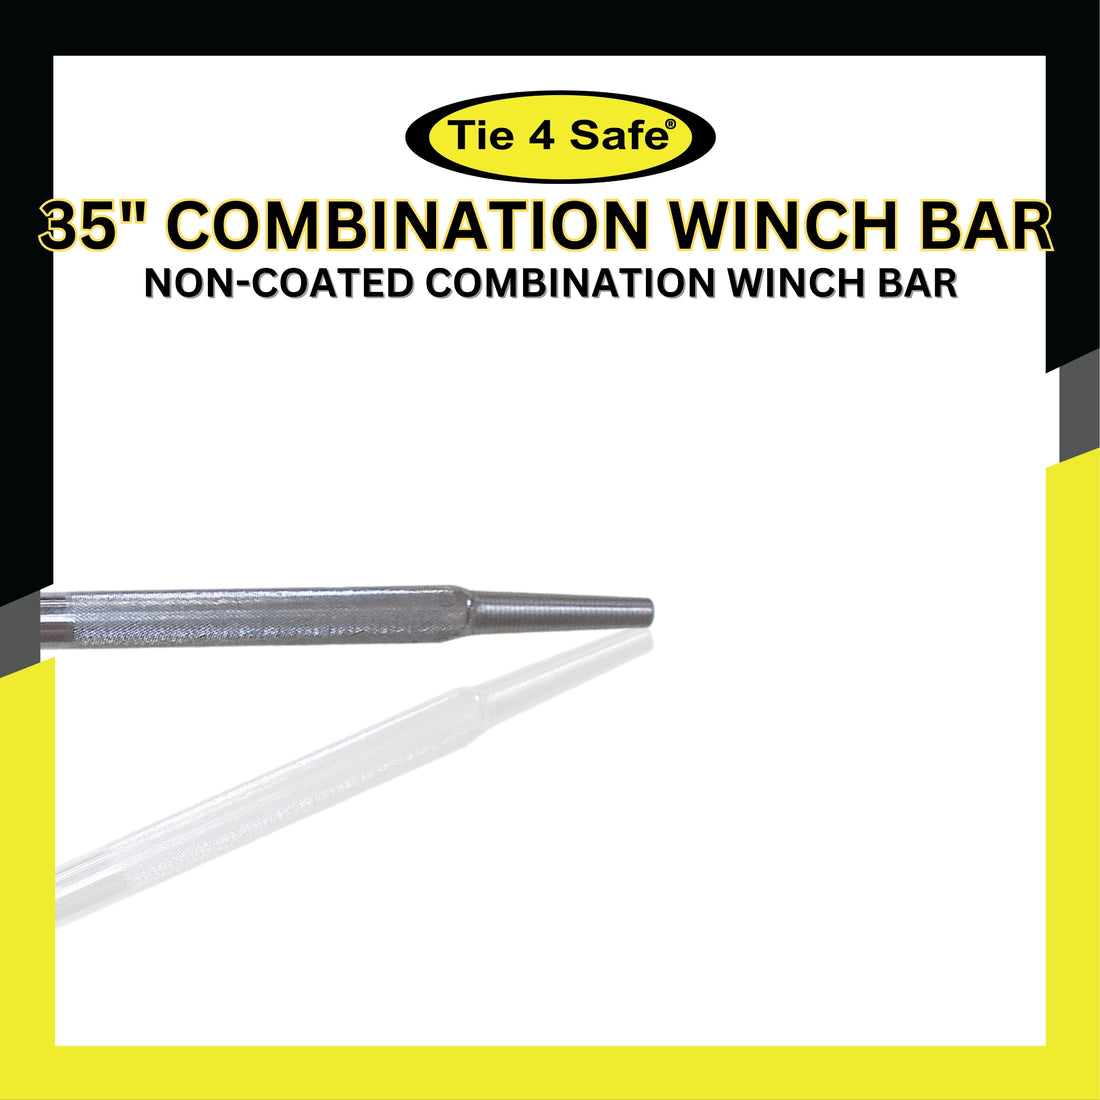 35" Combination Winch Bar